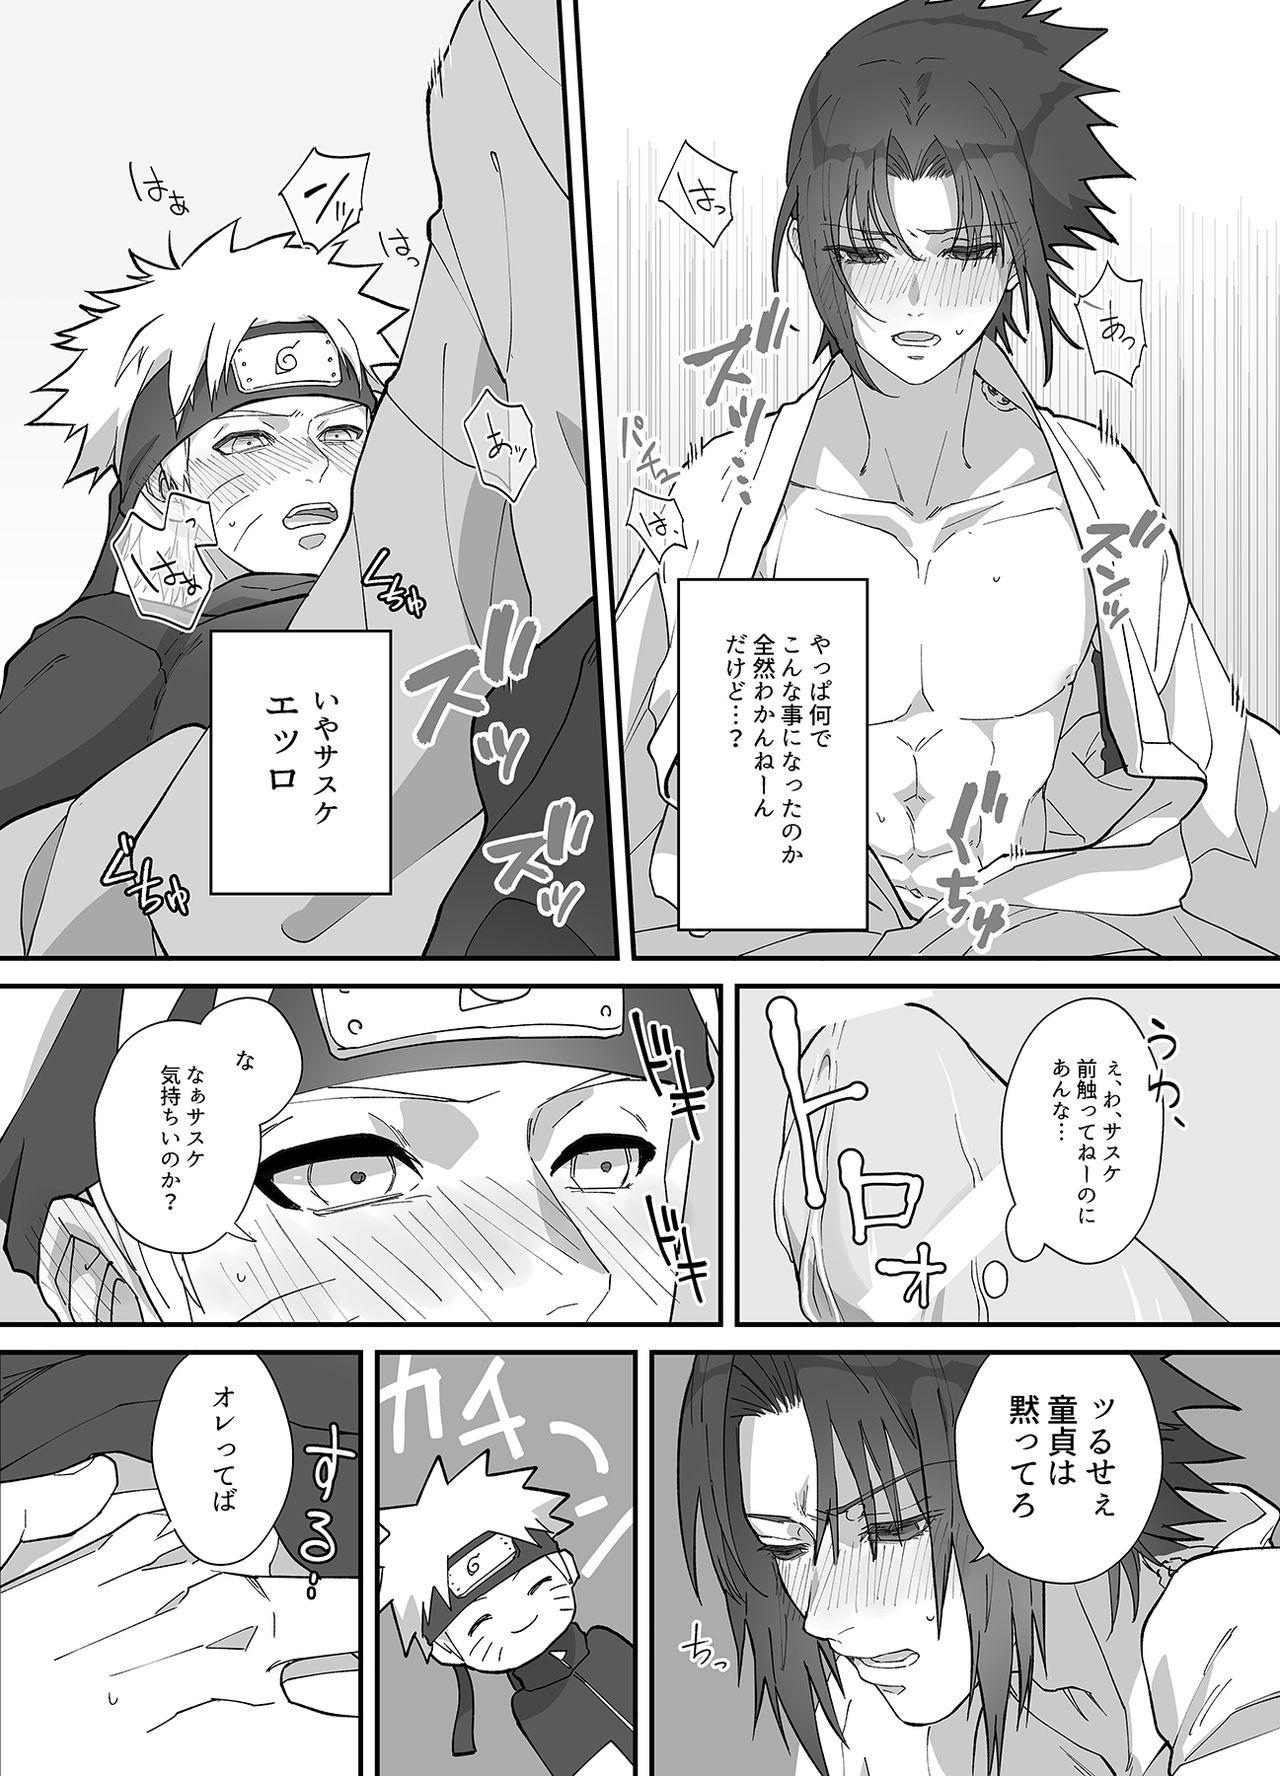 Breeding NaruSasu Only Kaisei Omedetougozaimasu! - Naruto Consolo - Page 9